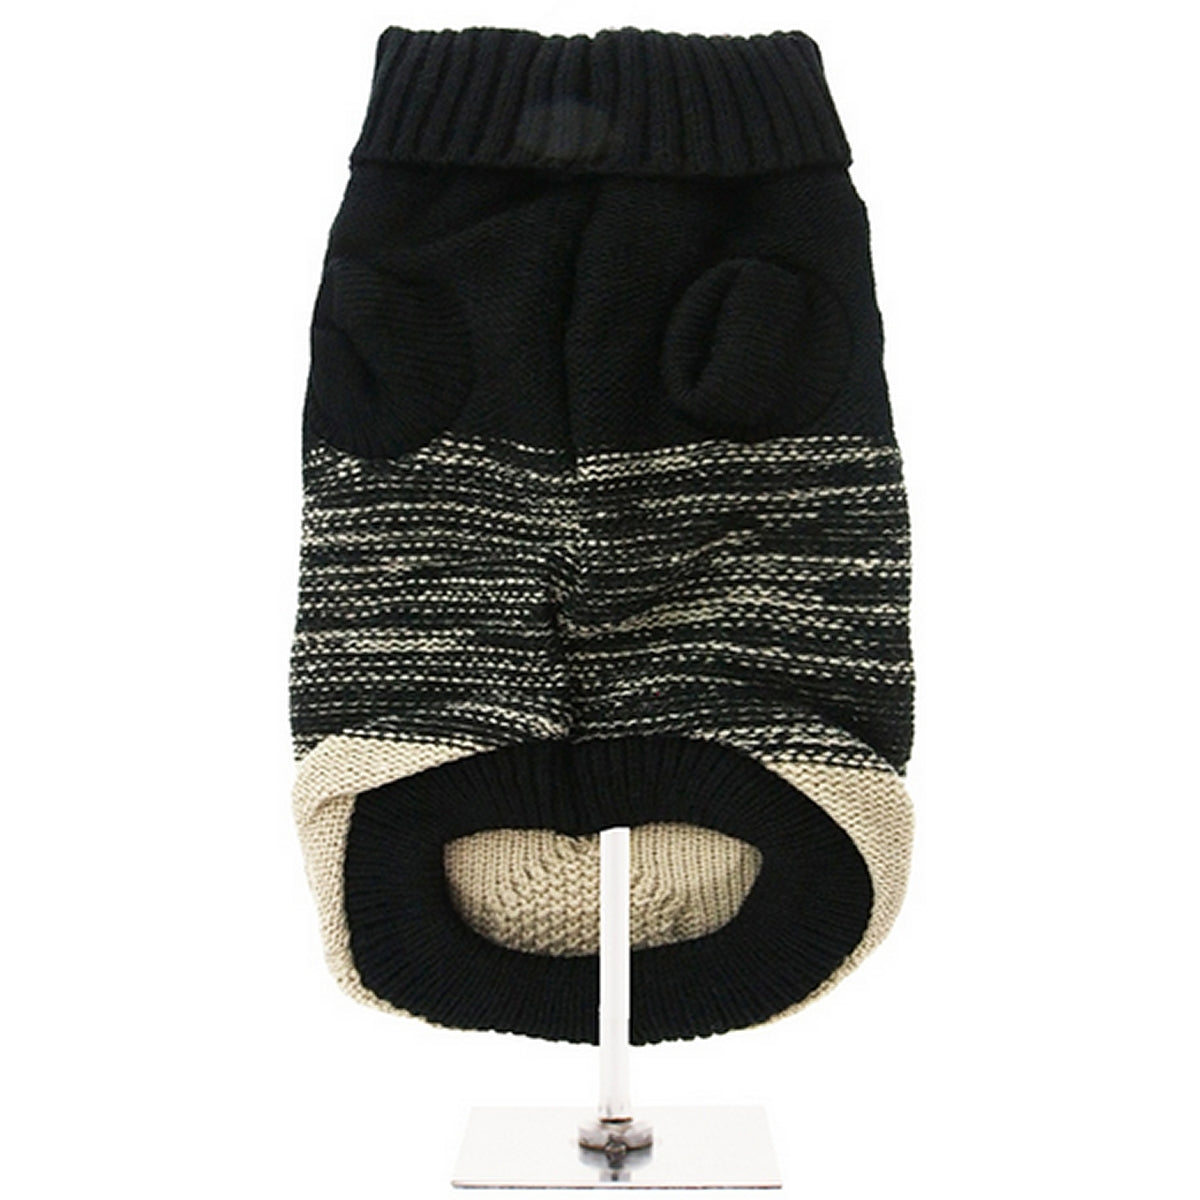 Designer Knitted Dog Jumper Black Beige